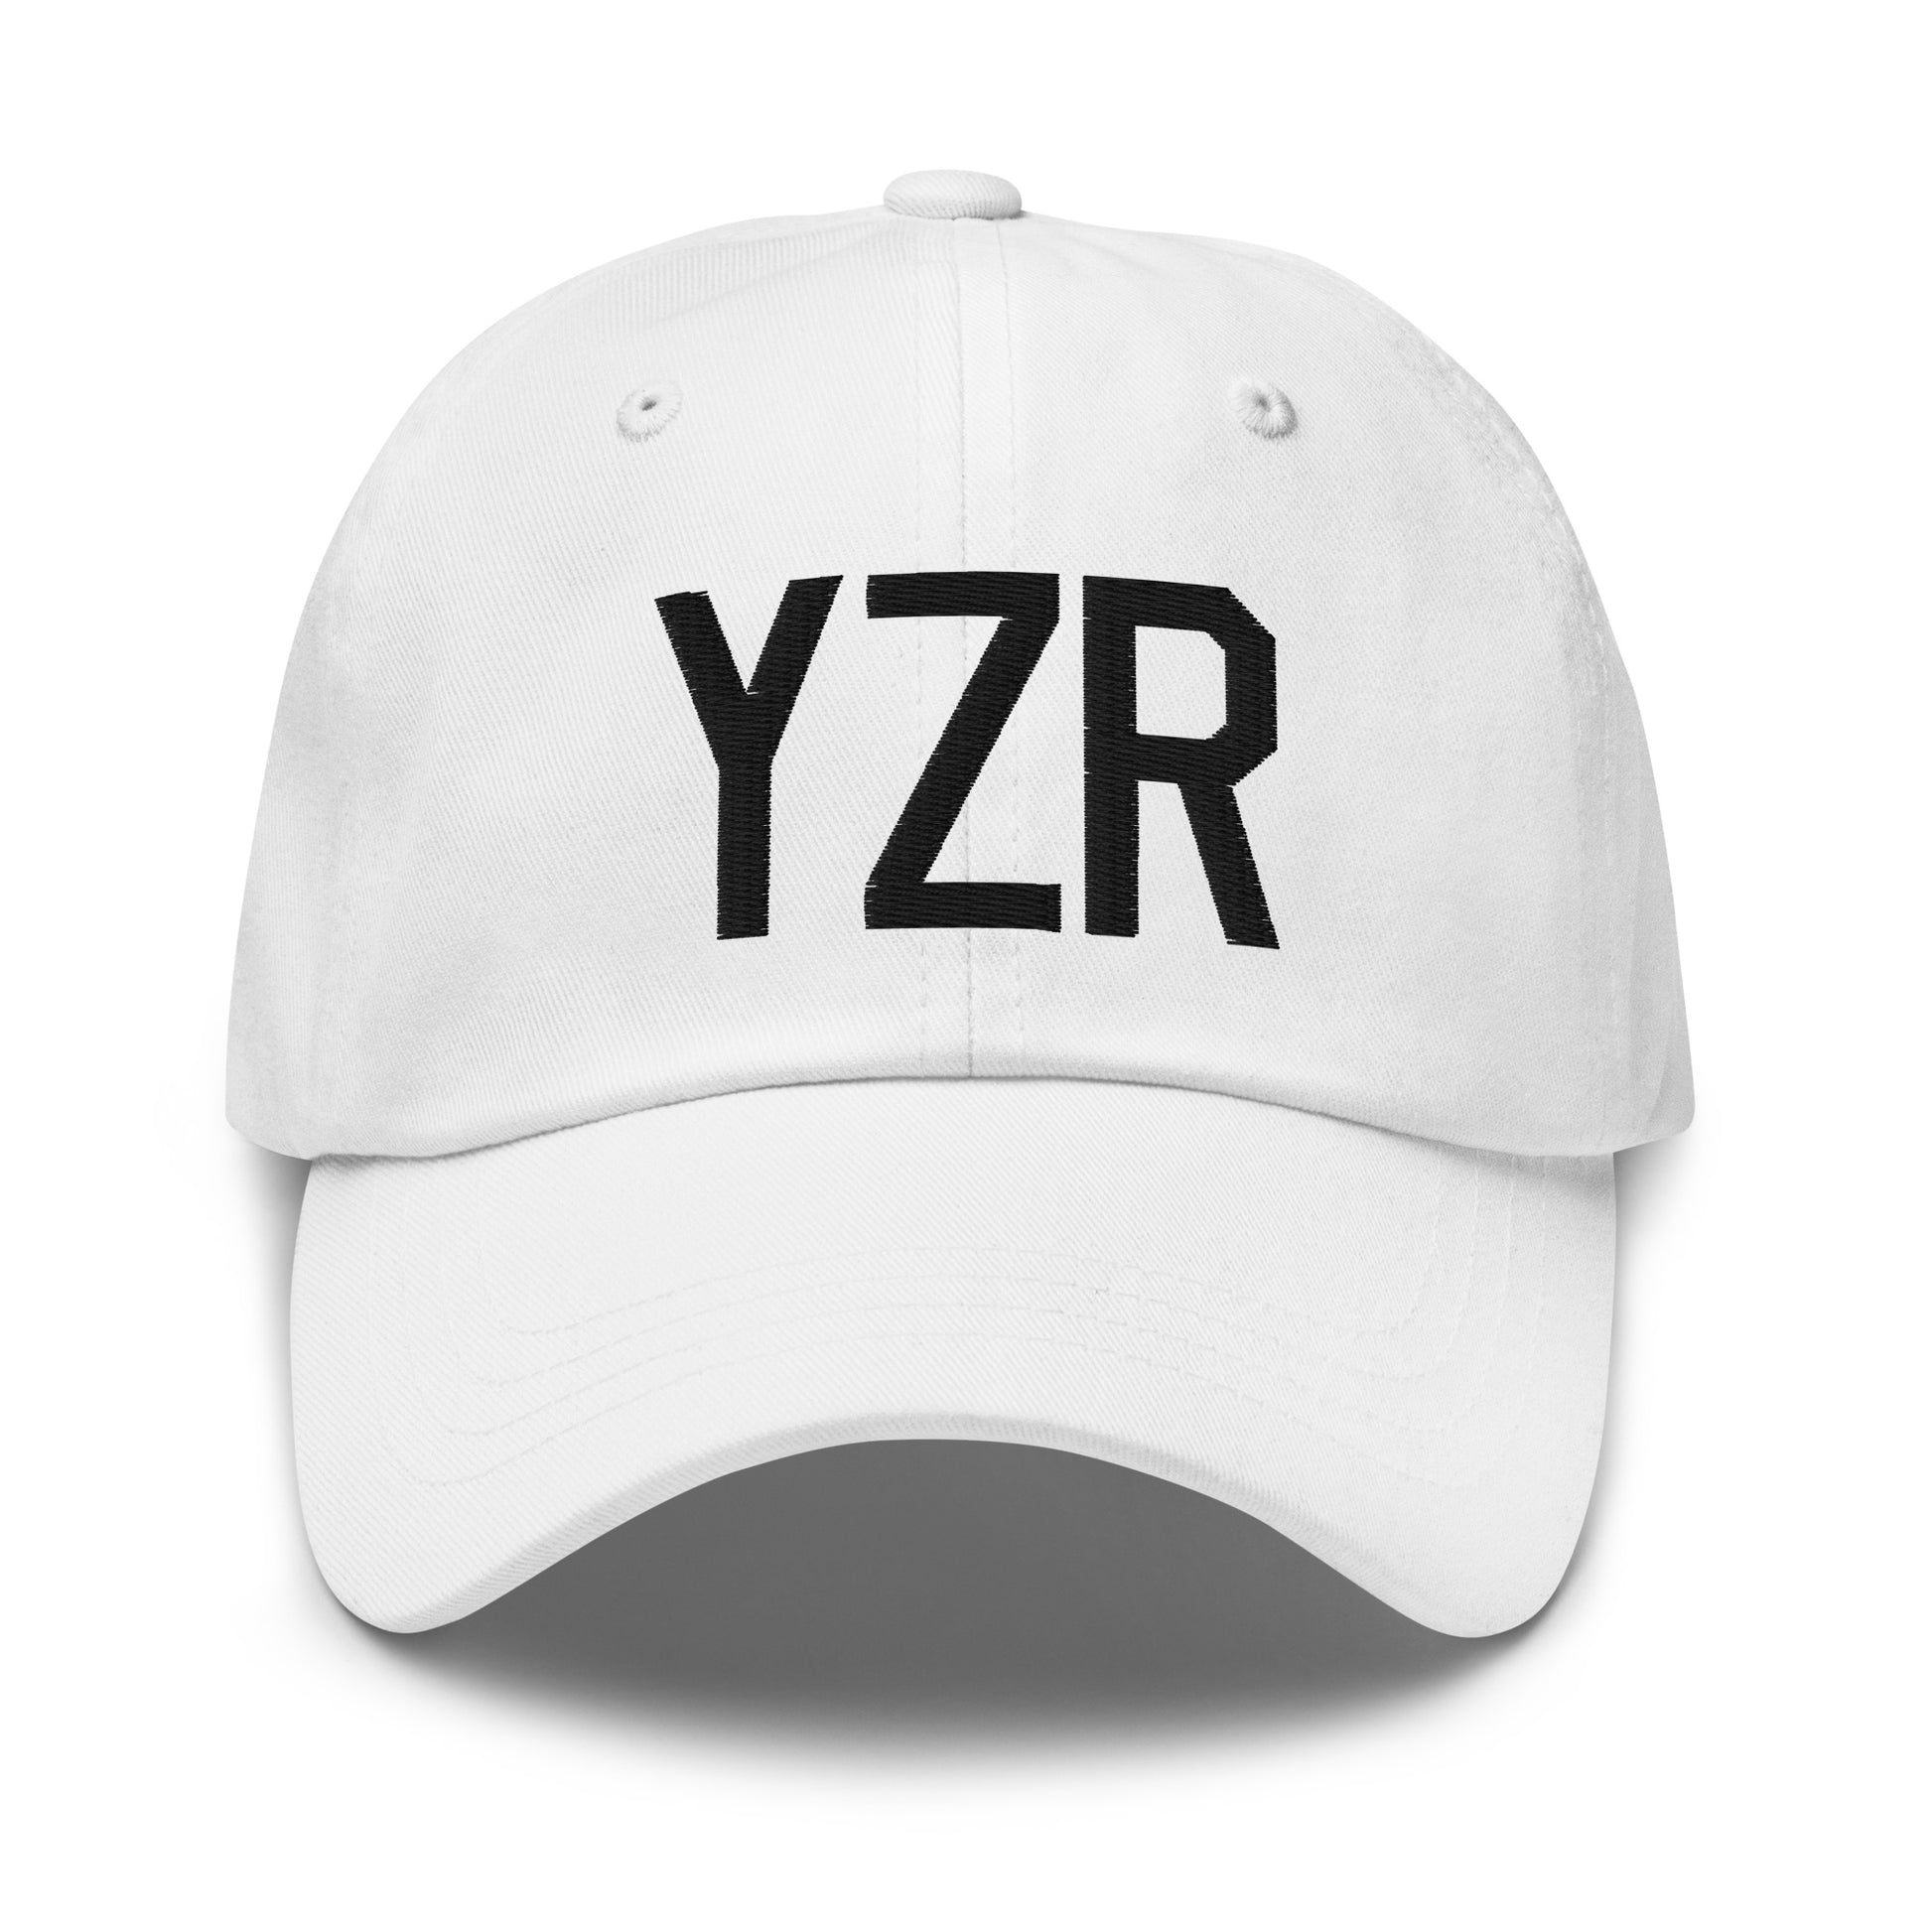 Airport Code Baseball Cap - Black • YZR Sarnia • YHM Designs - Image 18